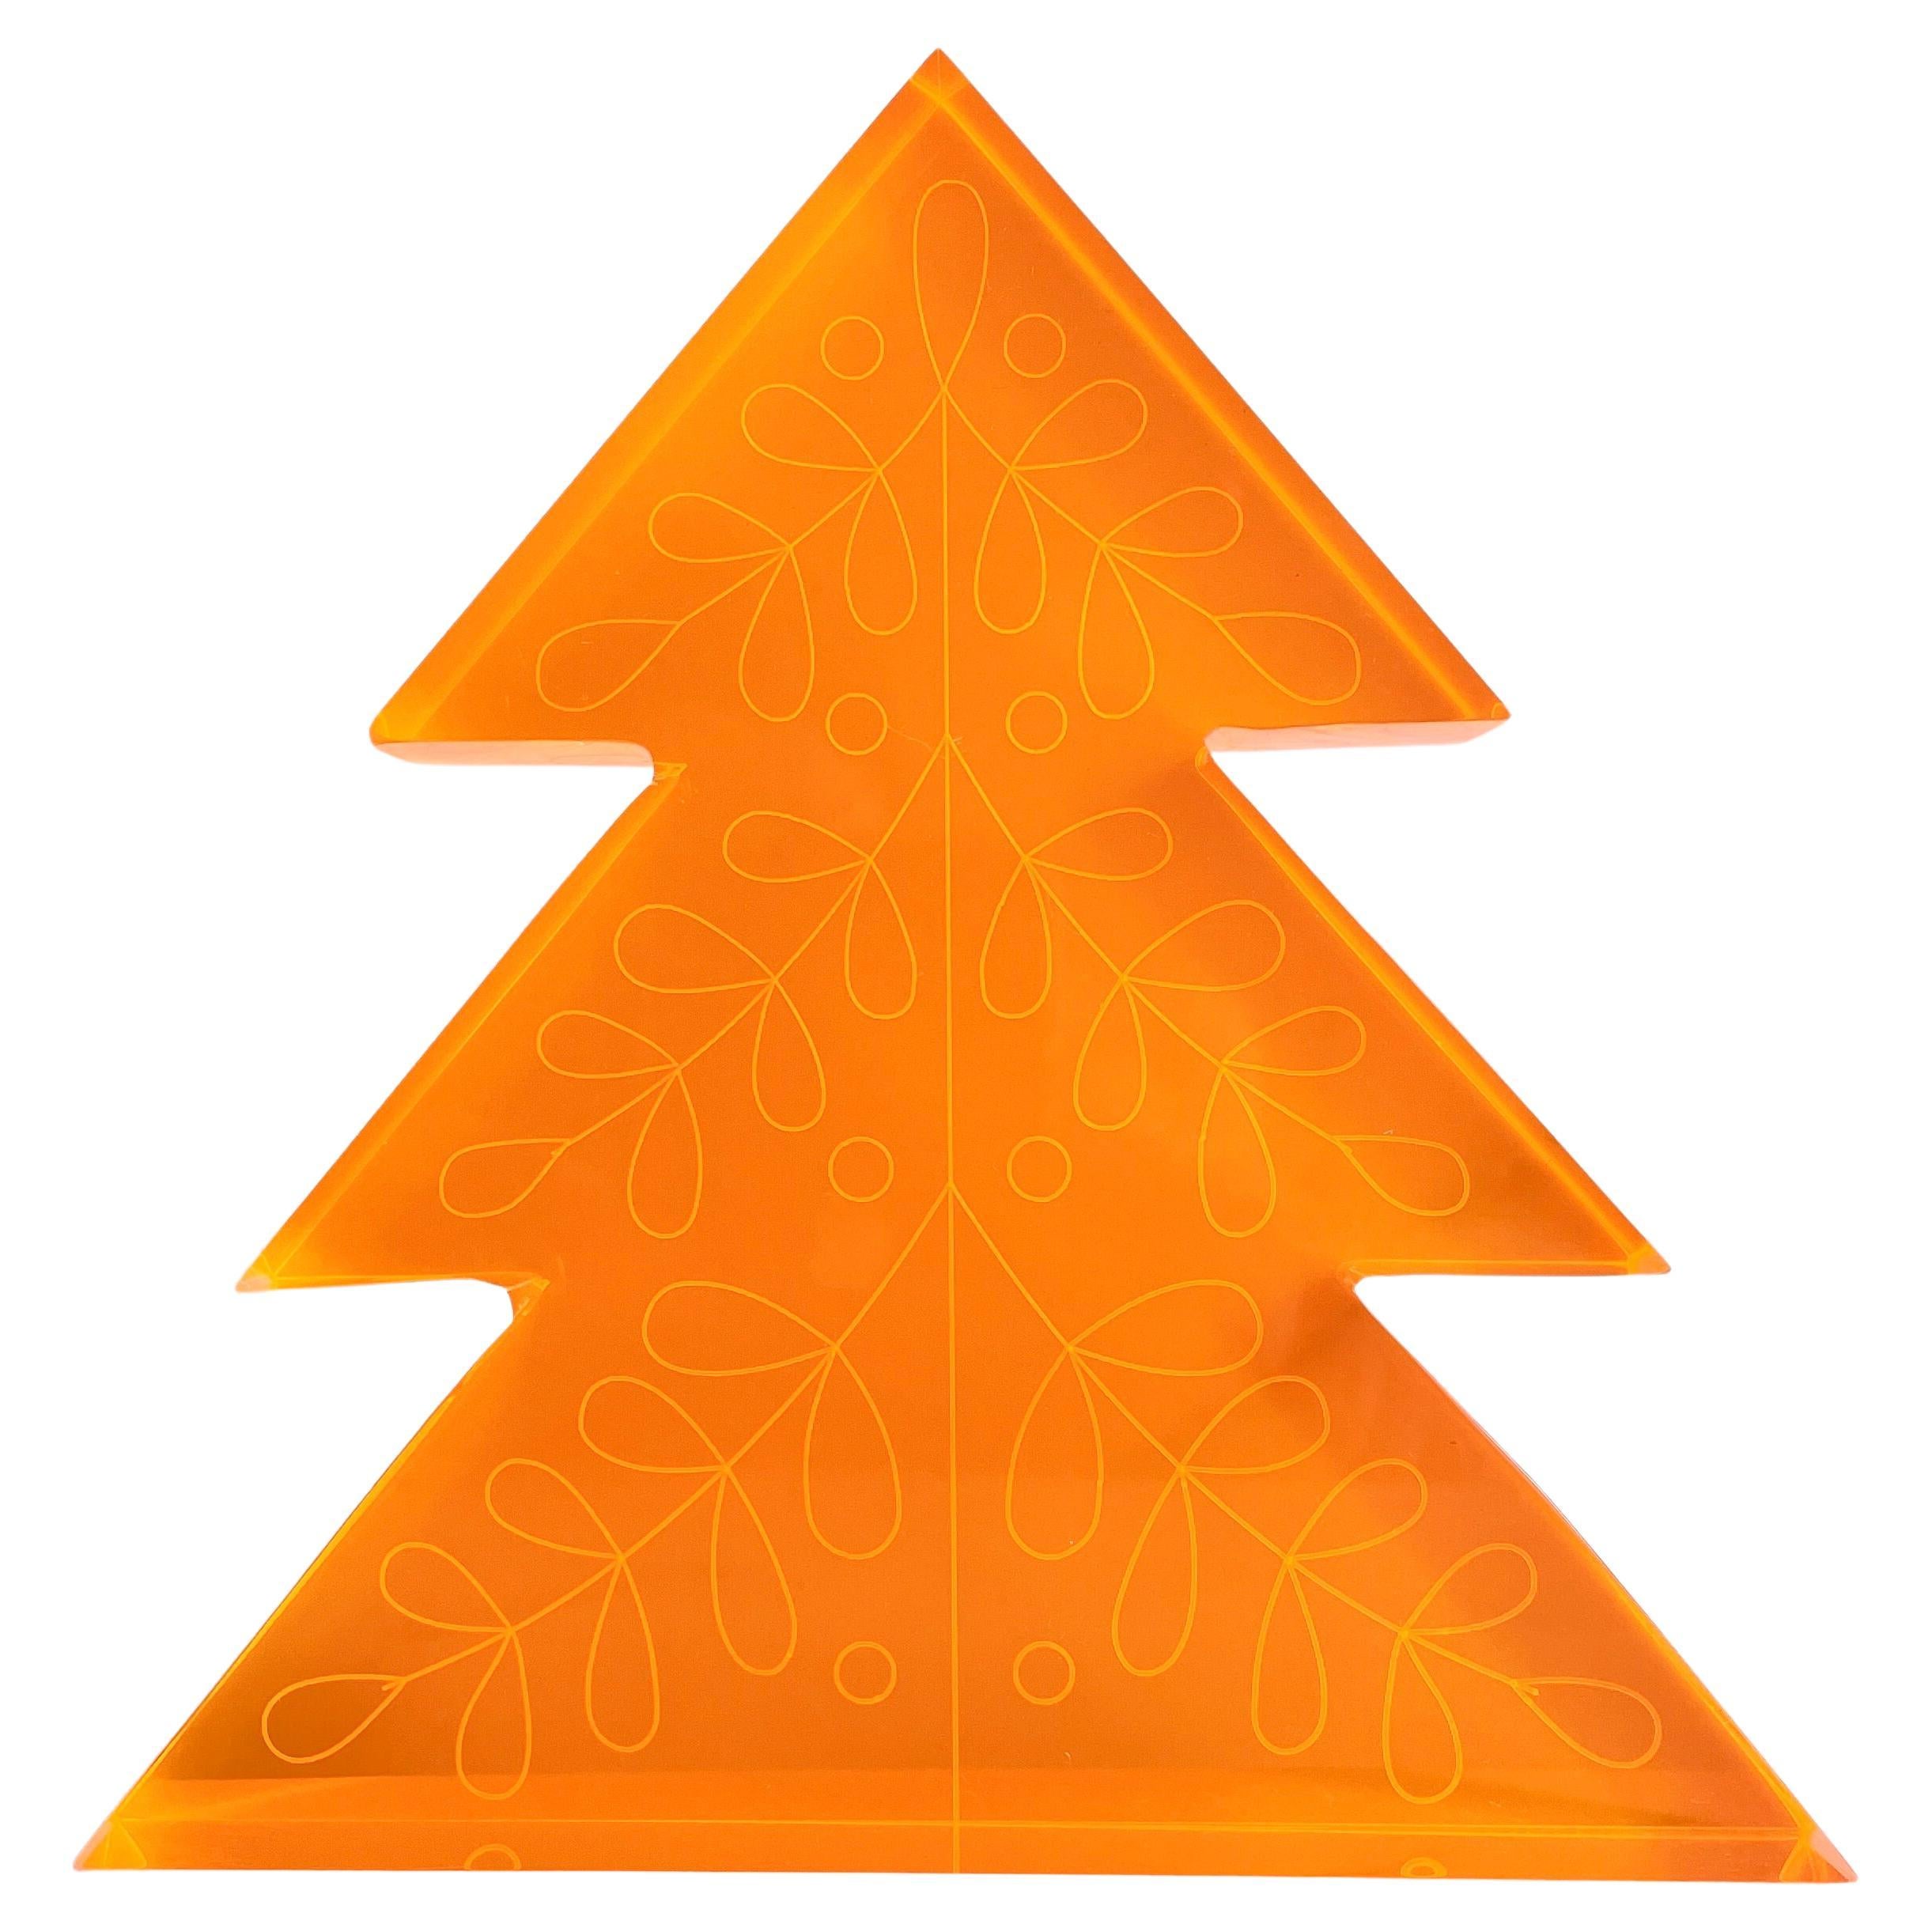 Décoration d'arbre de Noël en acrylique orange fluo par Paola Valle